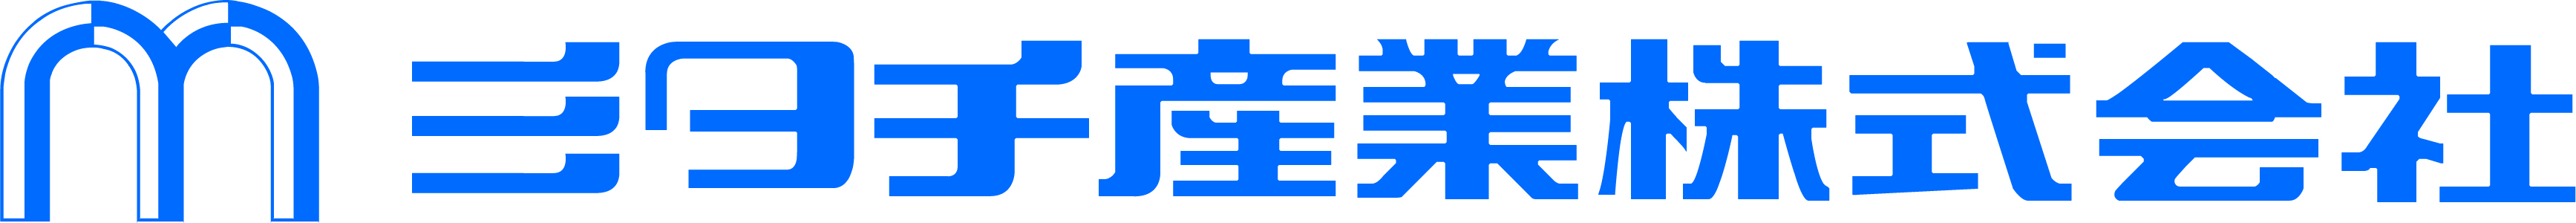 ミタチ産業株式会社-ロゴ